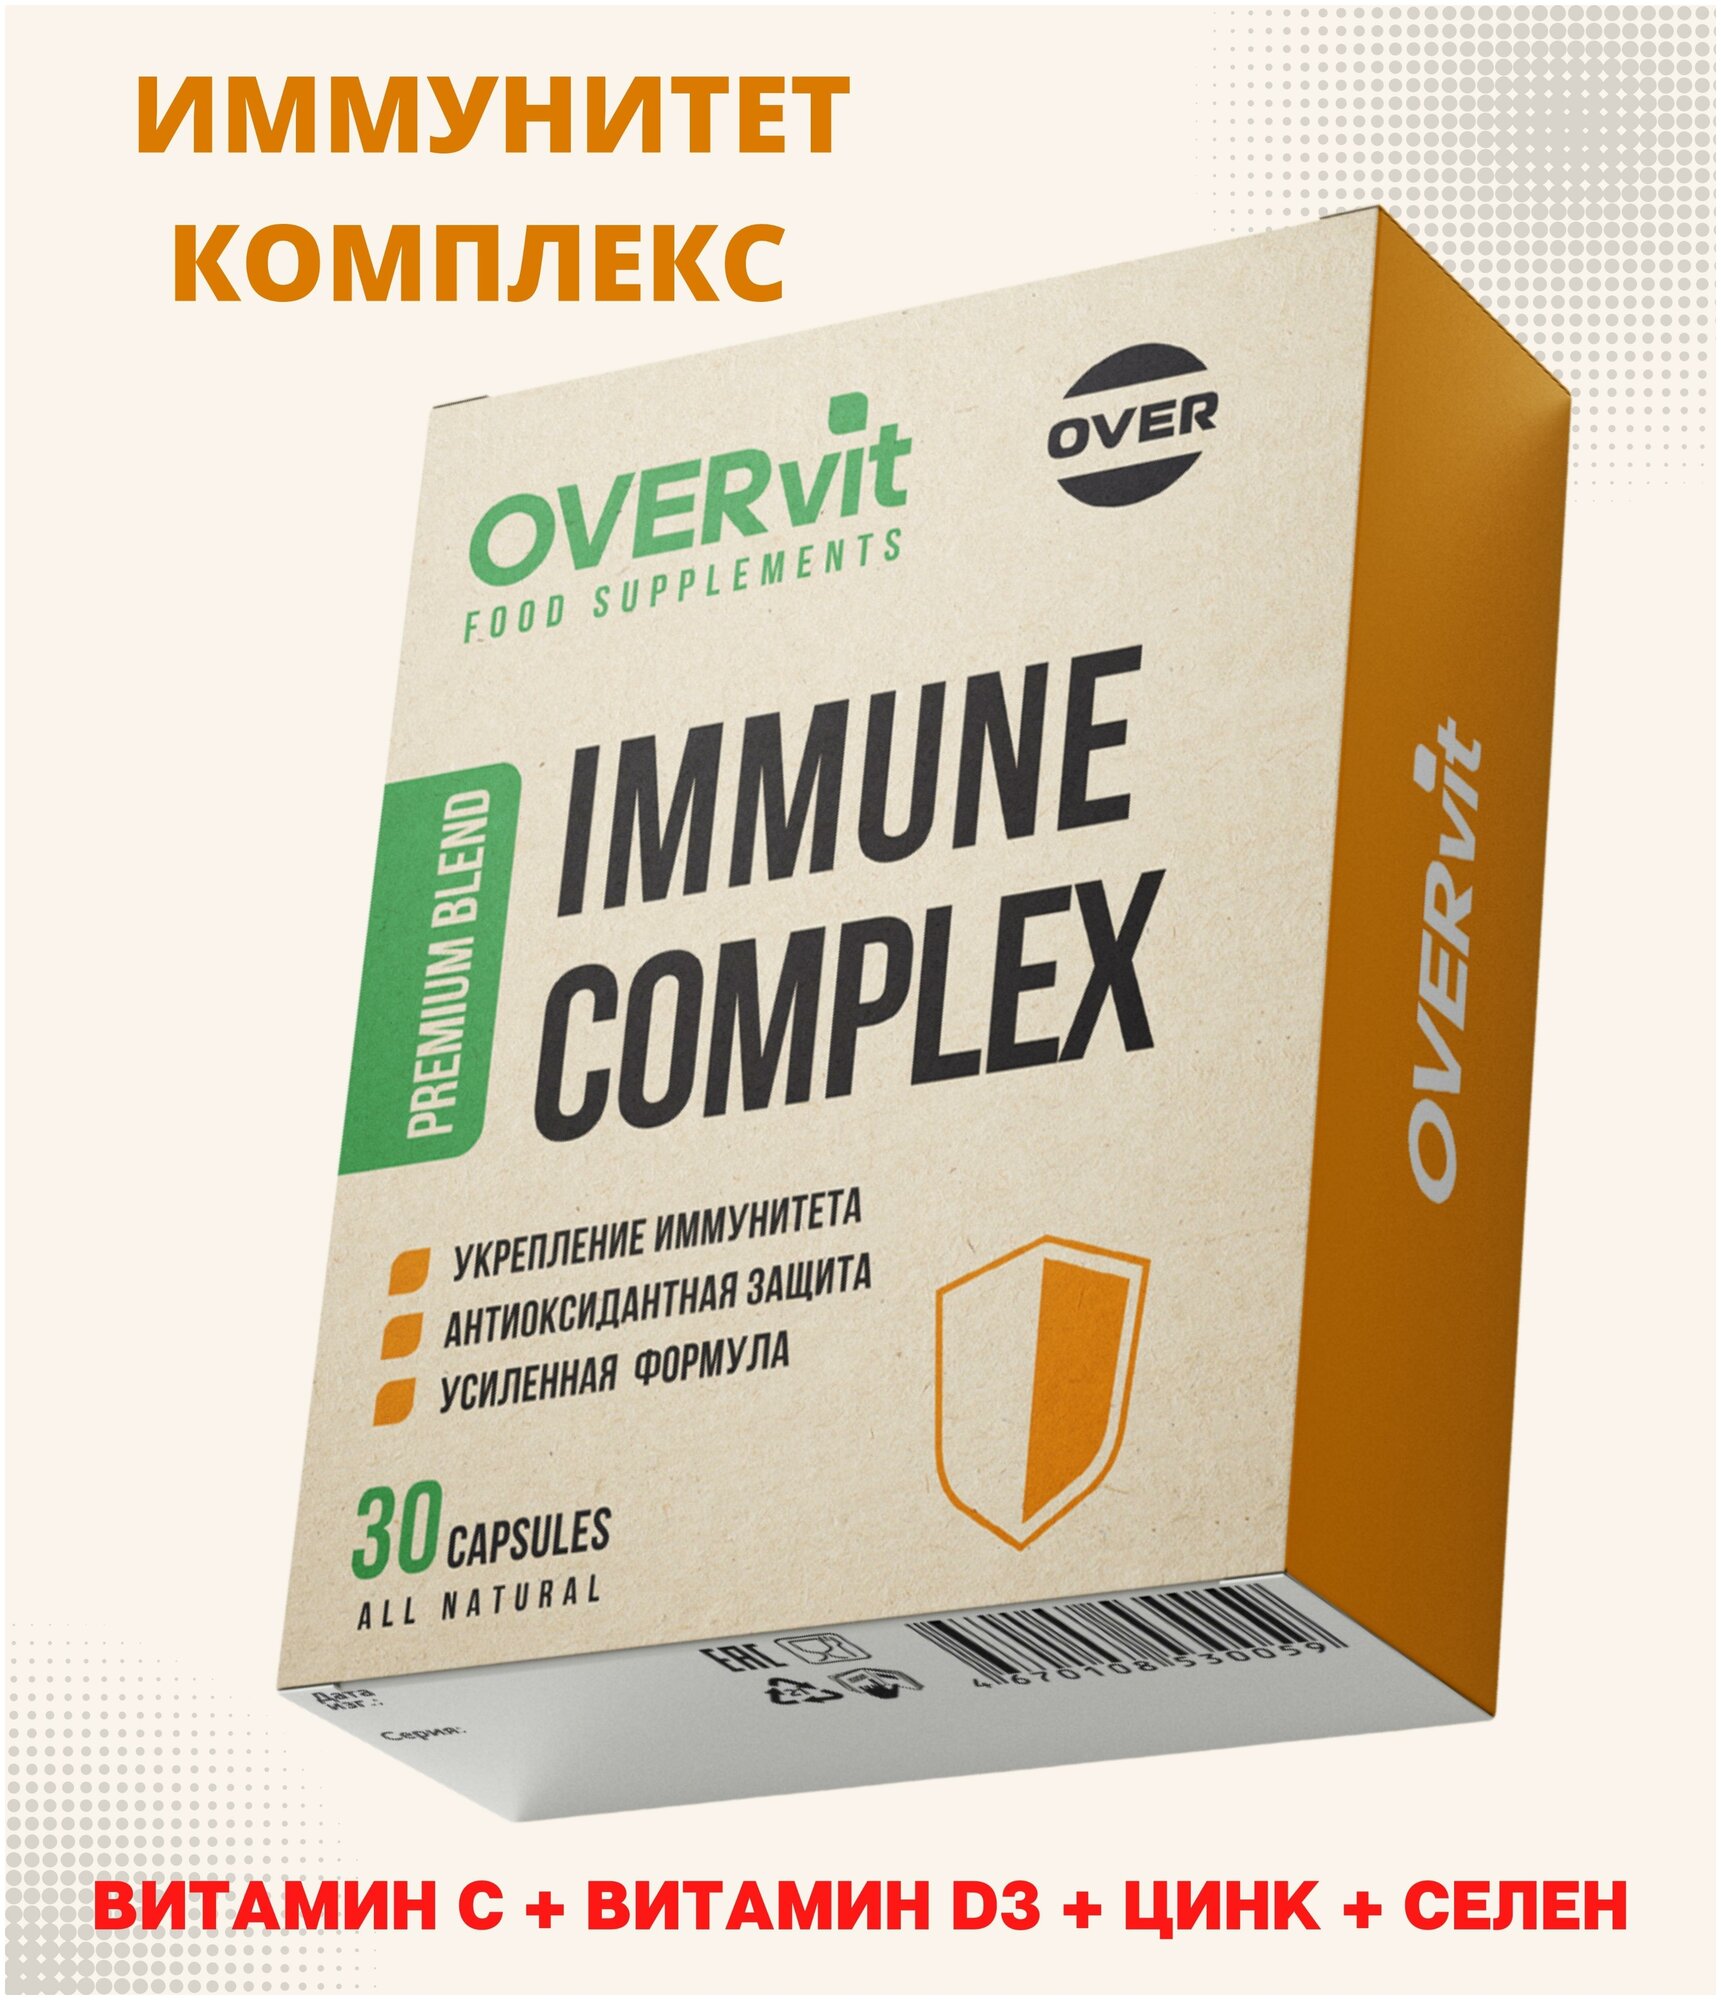 Витамины для иммунитета витаминный комплекс цинк хелат витамин D3 витамин C селен цинк от простуды overvit овервит иммунитет комплекс30капс